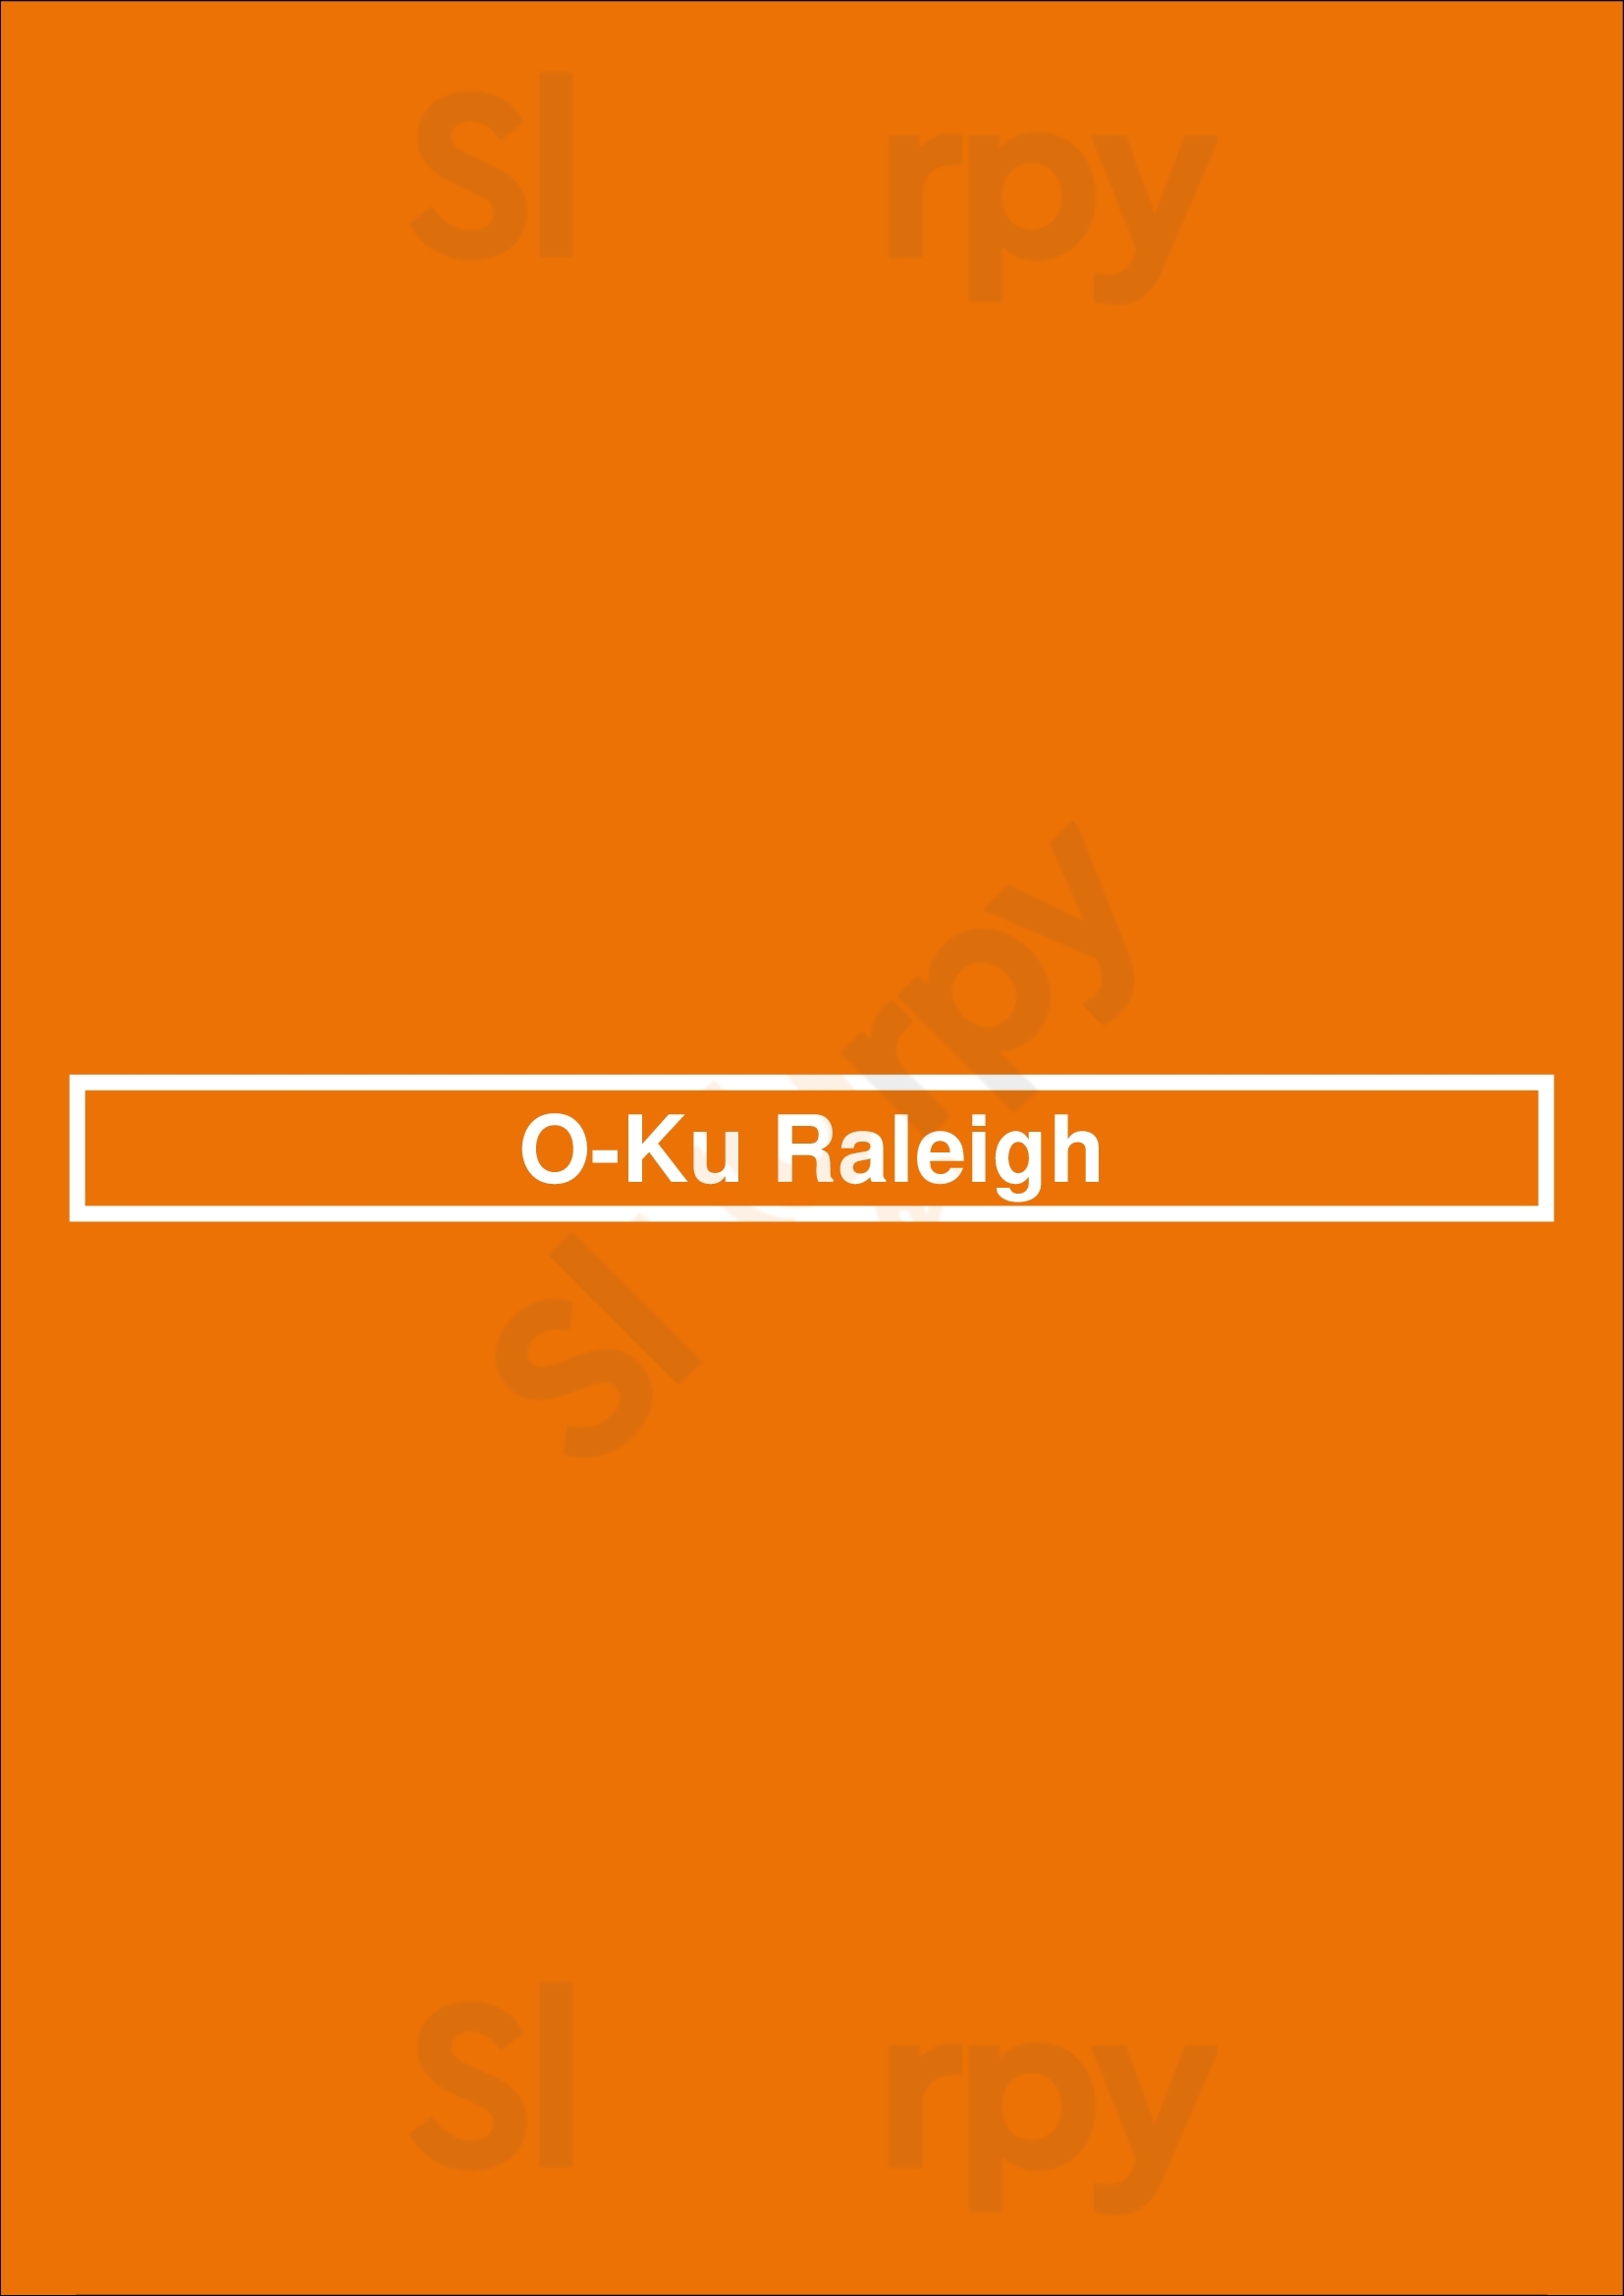 O-ku Raleigh Menu - 1